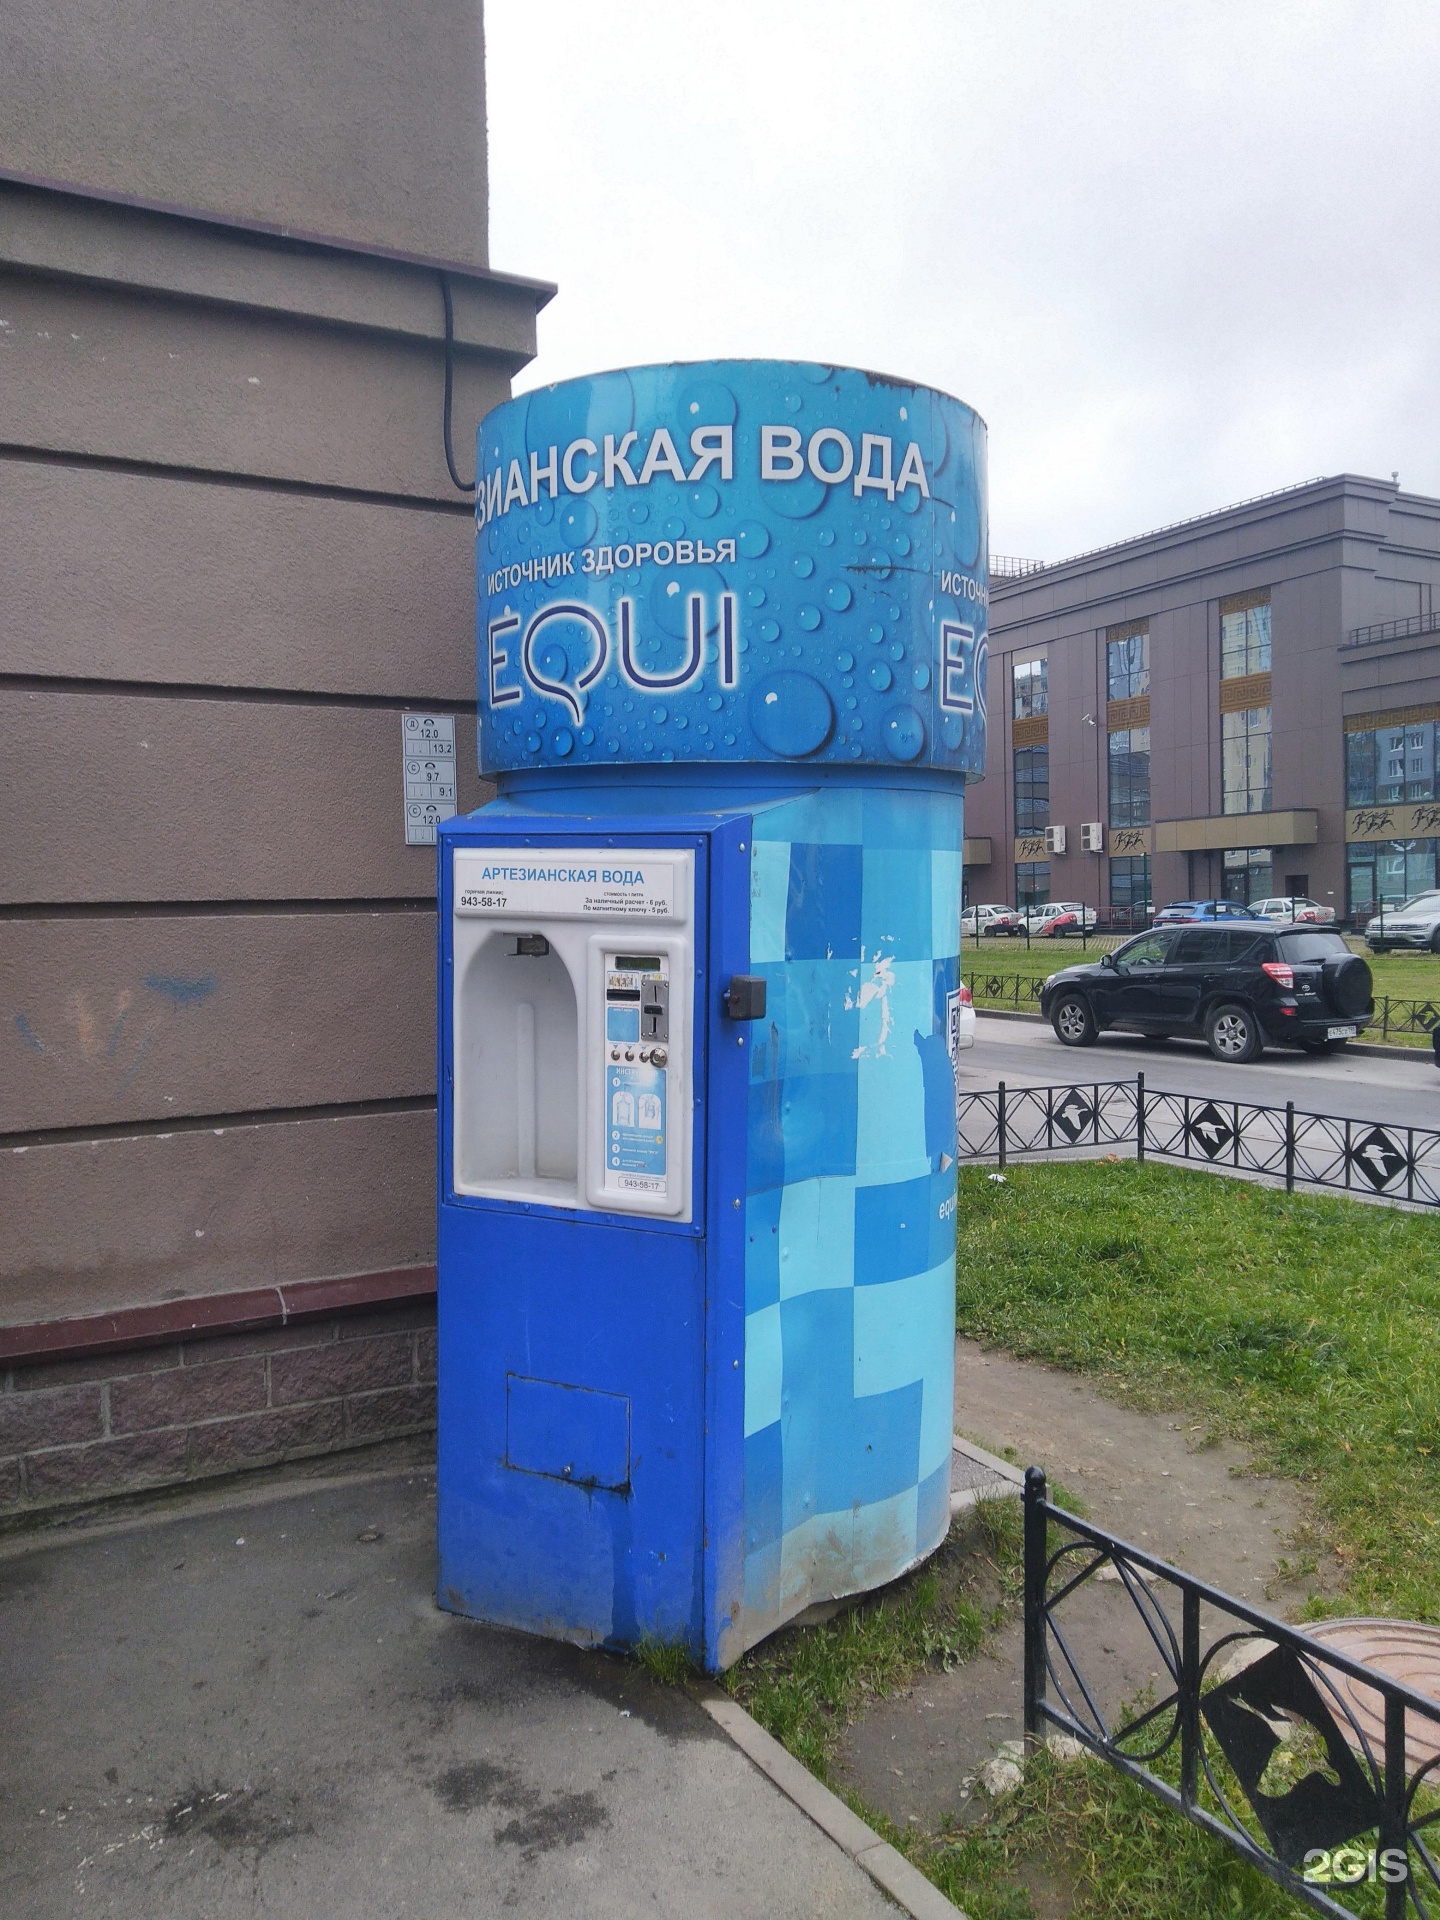 Автомат по продаже питьевой воды. Ларьки питьевой воды в Питере. Вода Санкт-Петербург 0.2. Автоматы с водой в Питере пить. Техническая вода спб